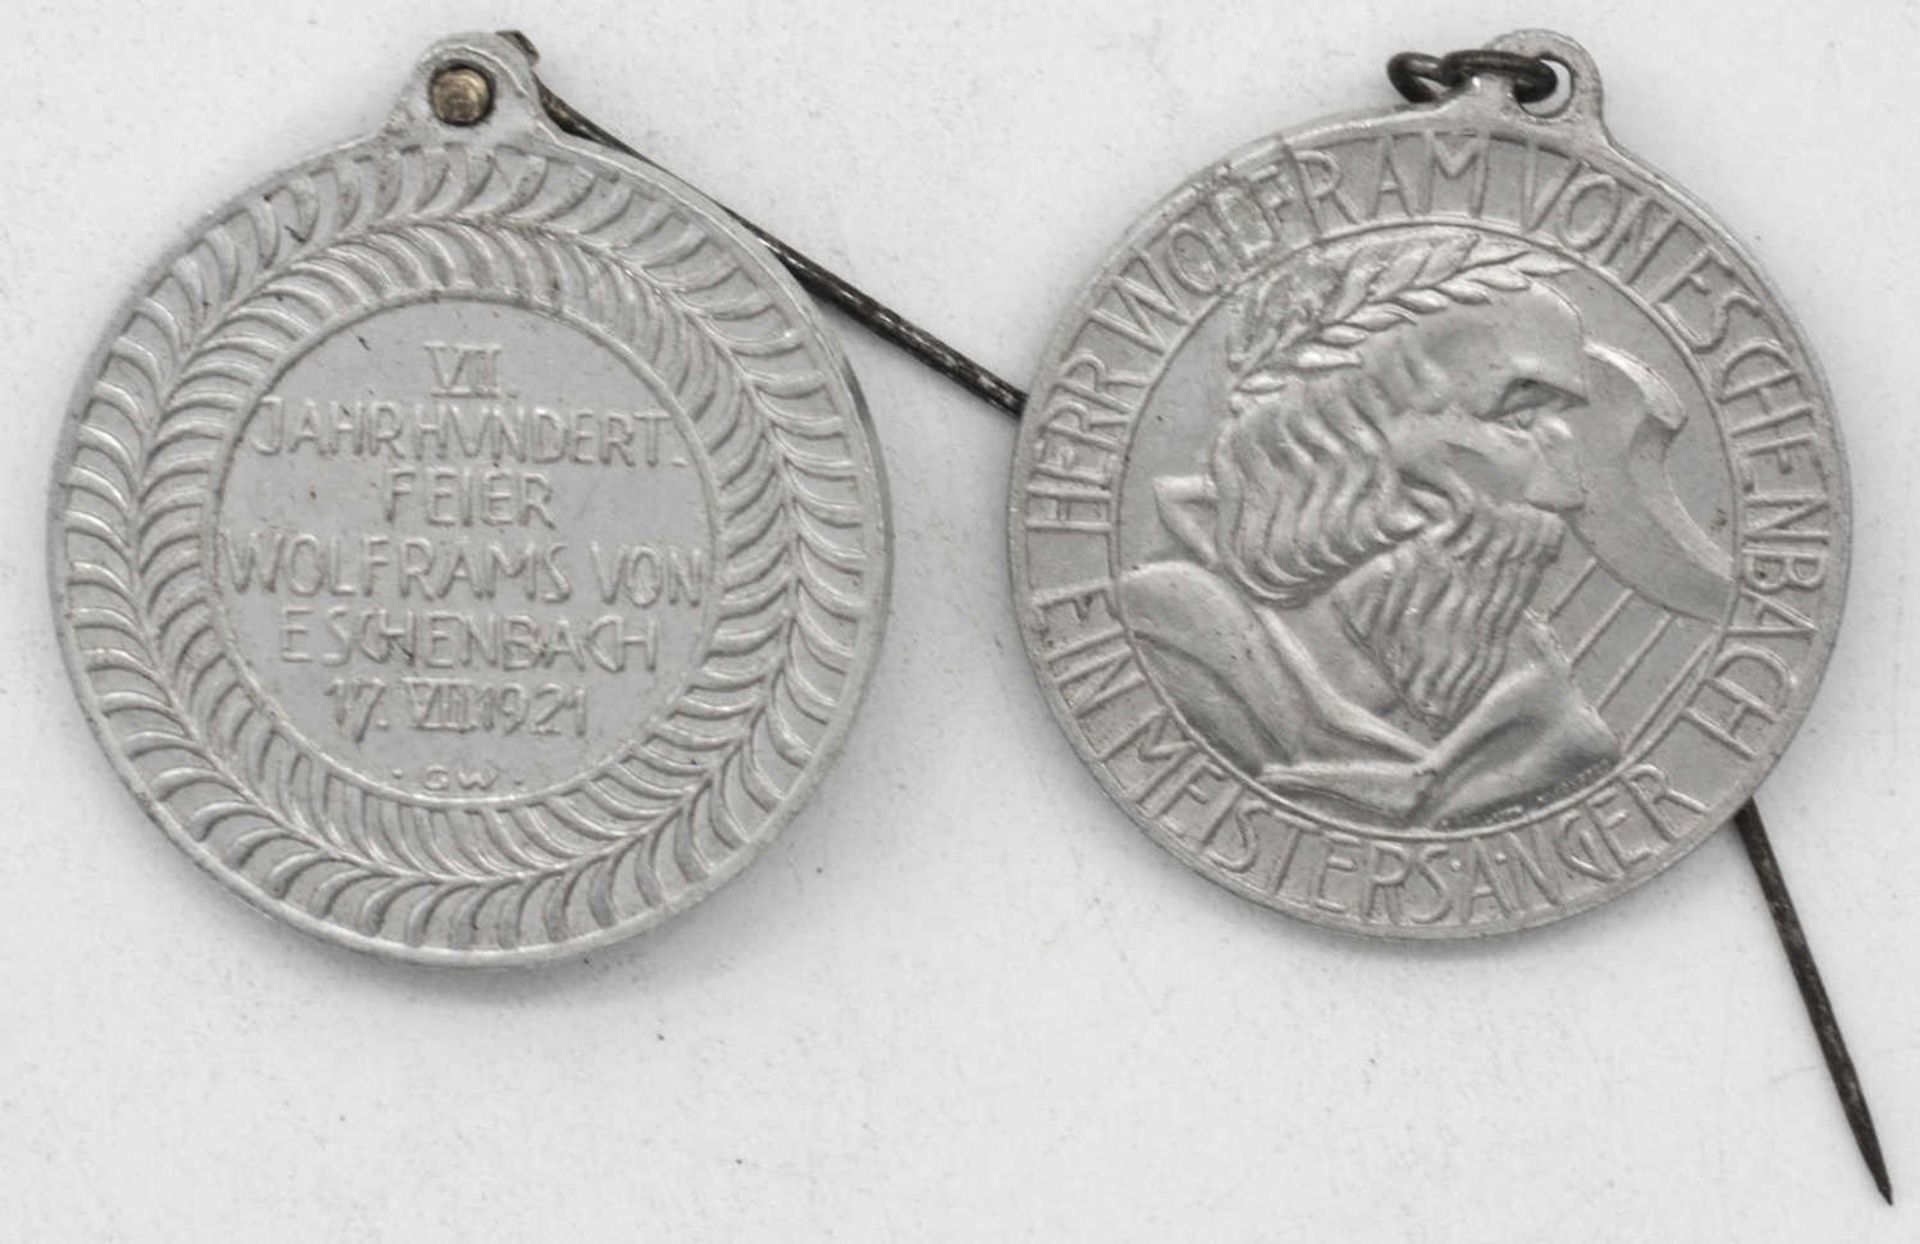 Zwei alte Orden "7. Jahrhundertfeier Wolframs von Eschenbach 17. VII. 1921. Aluminium.Two old medal